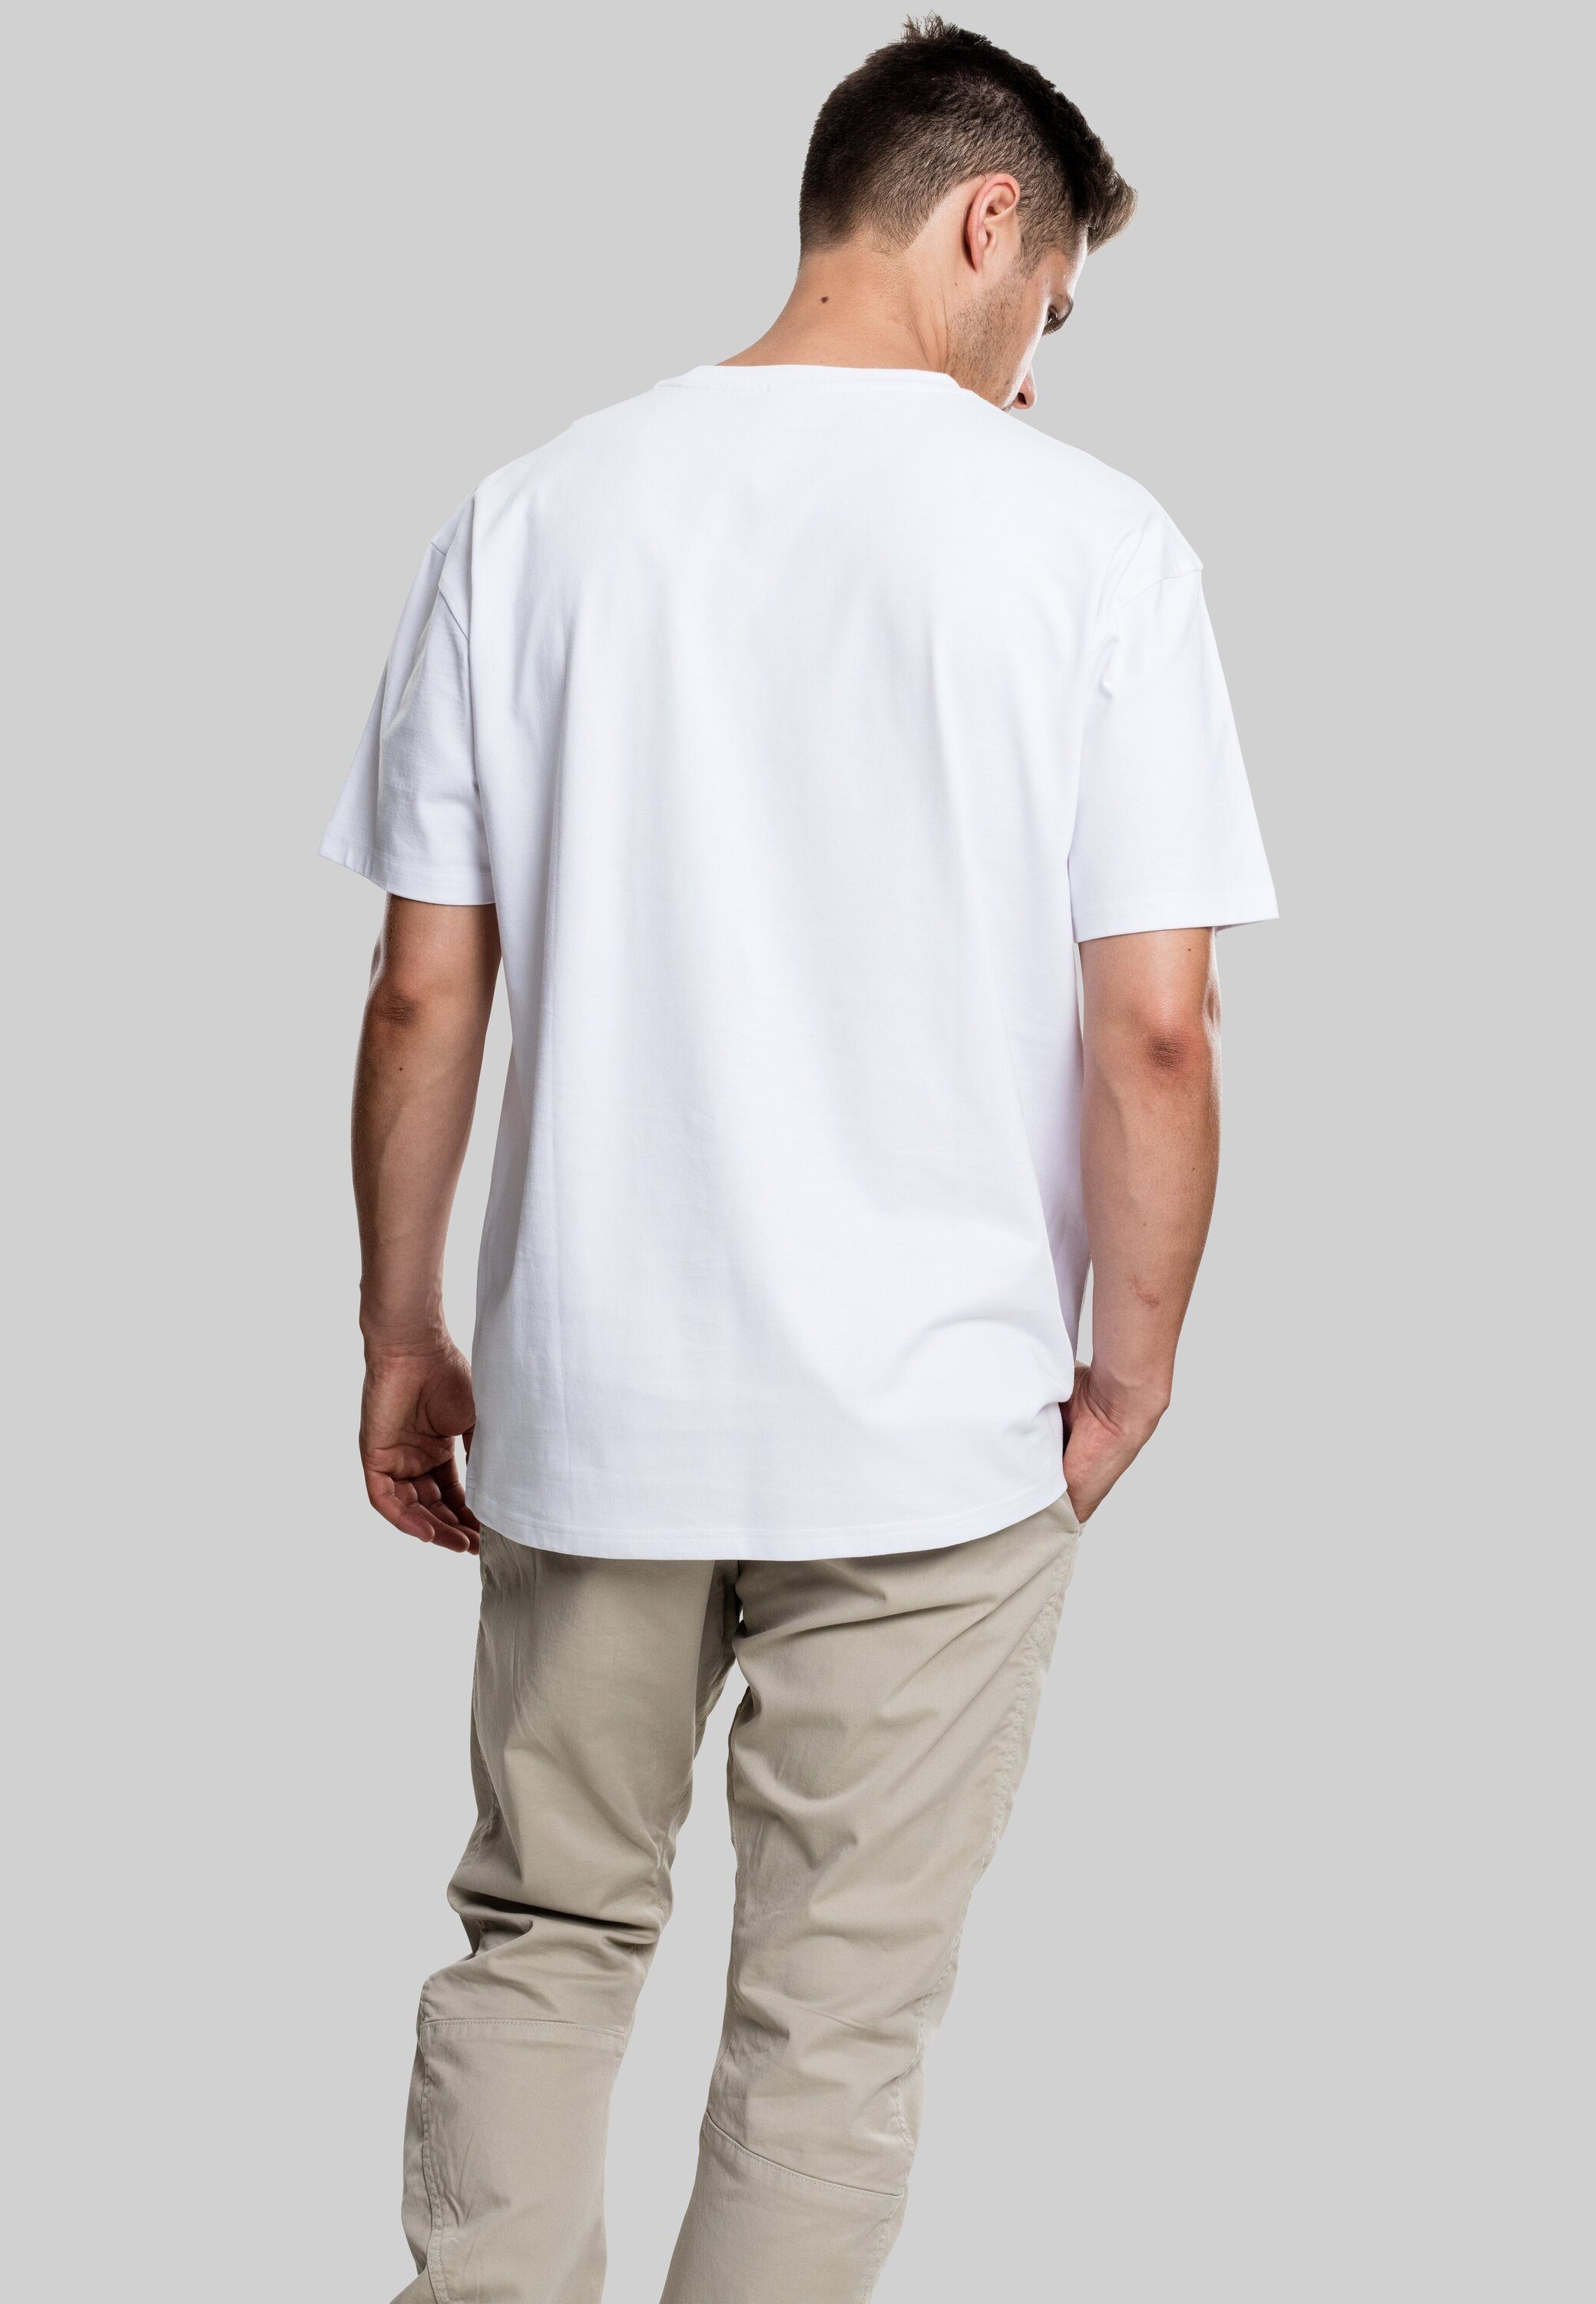 Heavy Tee T-Shirt white (1-tlg) Herren URBAN Oversized CLASSICS